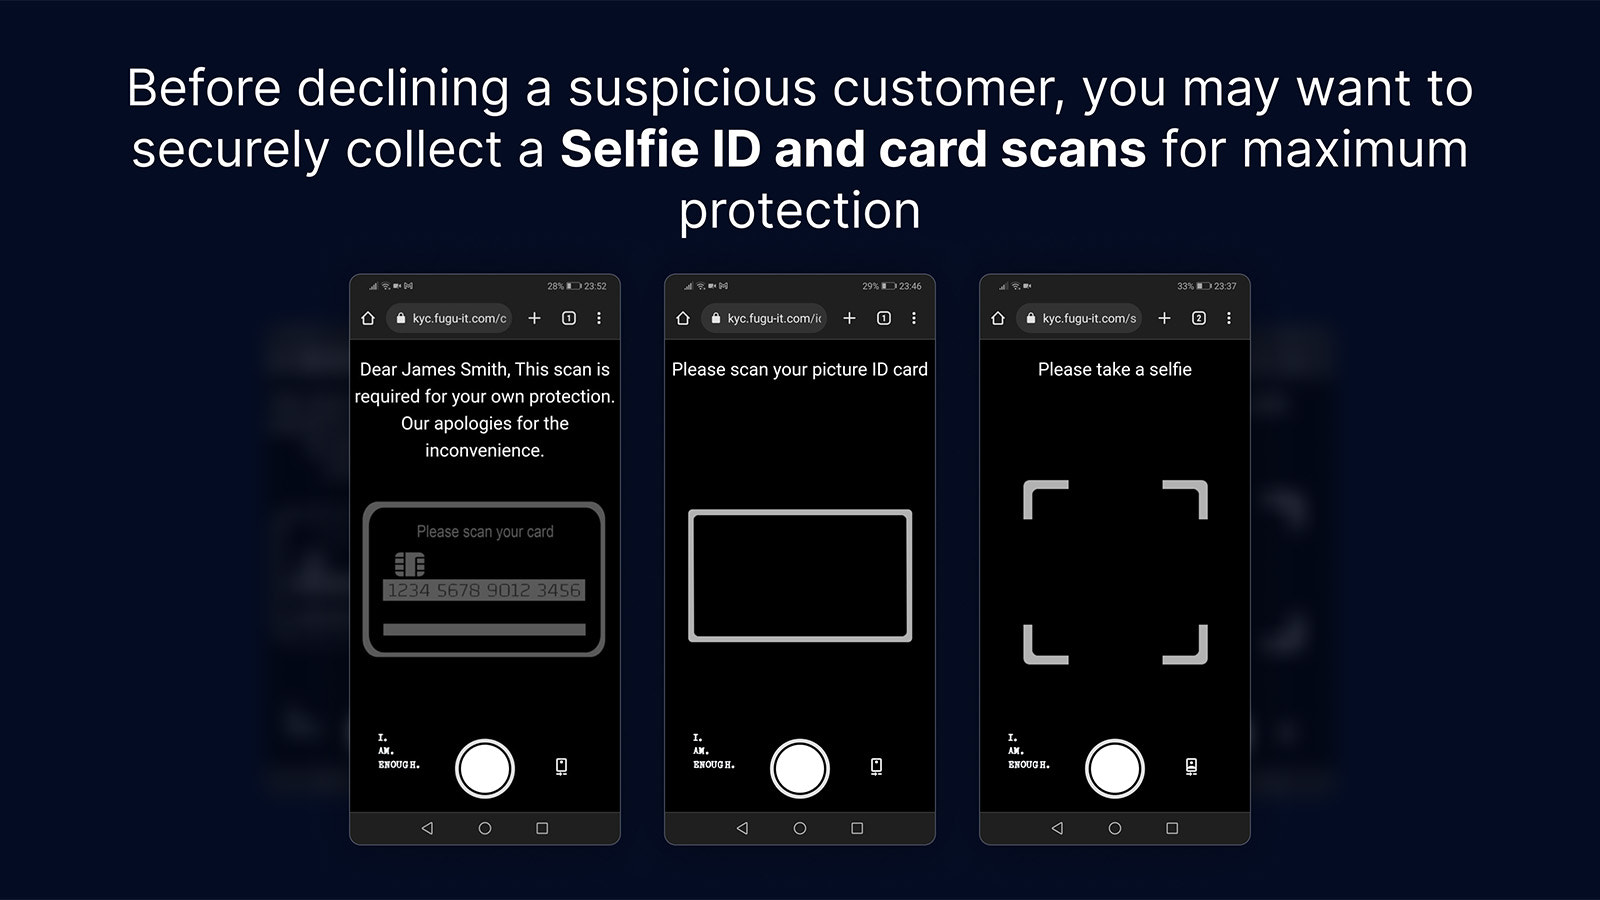 Indien nodig, verzamel veilig Selfie ID's en kaartscans